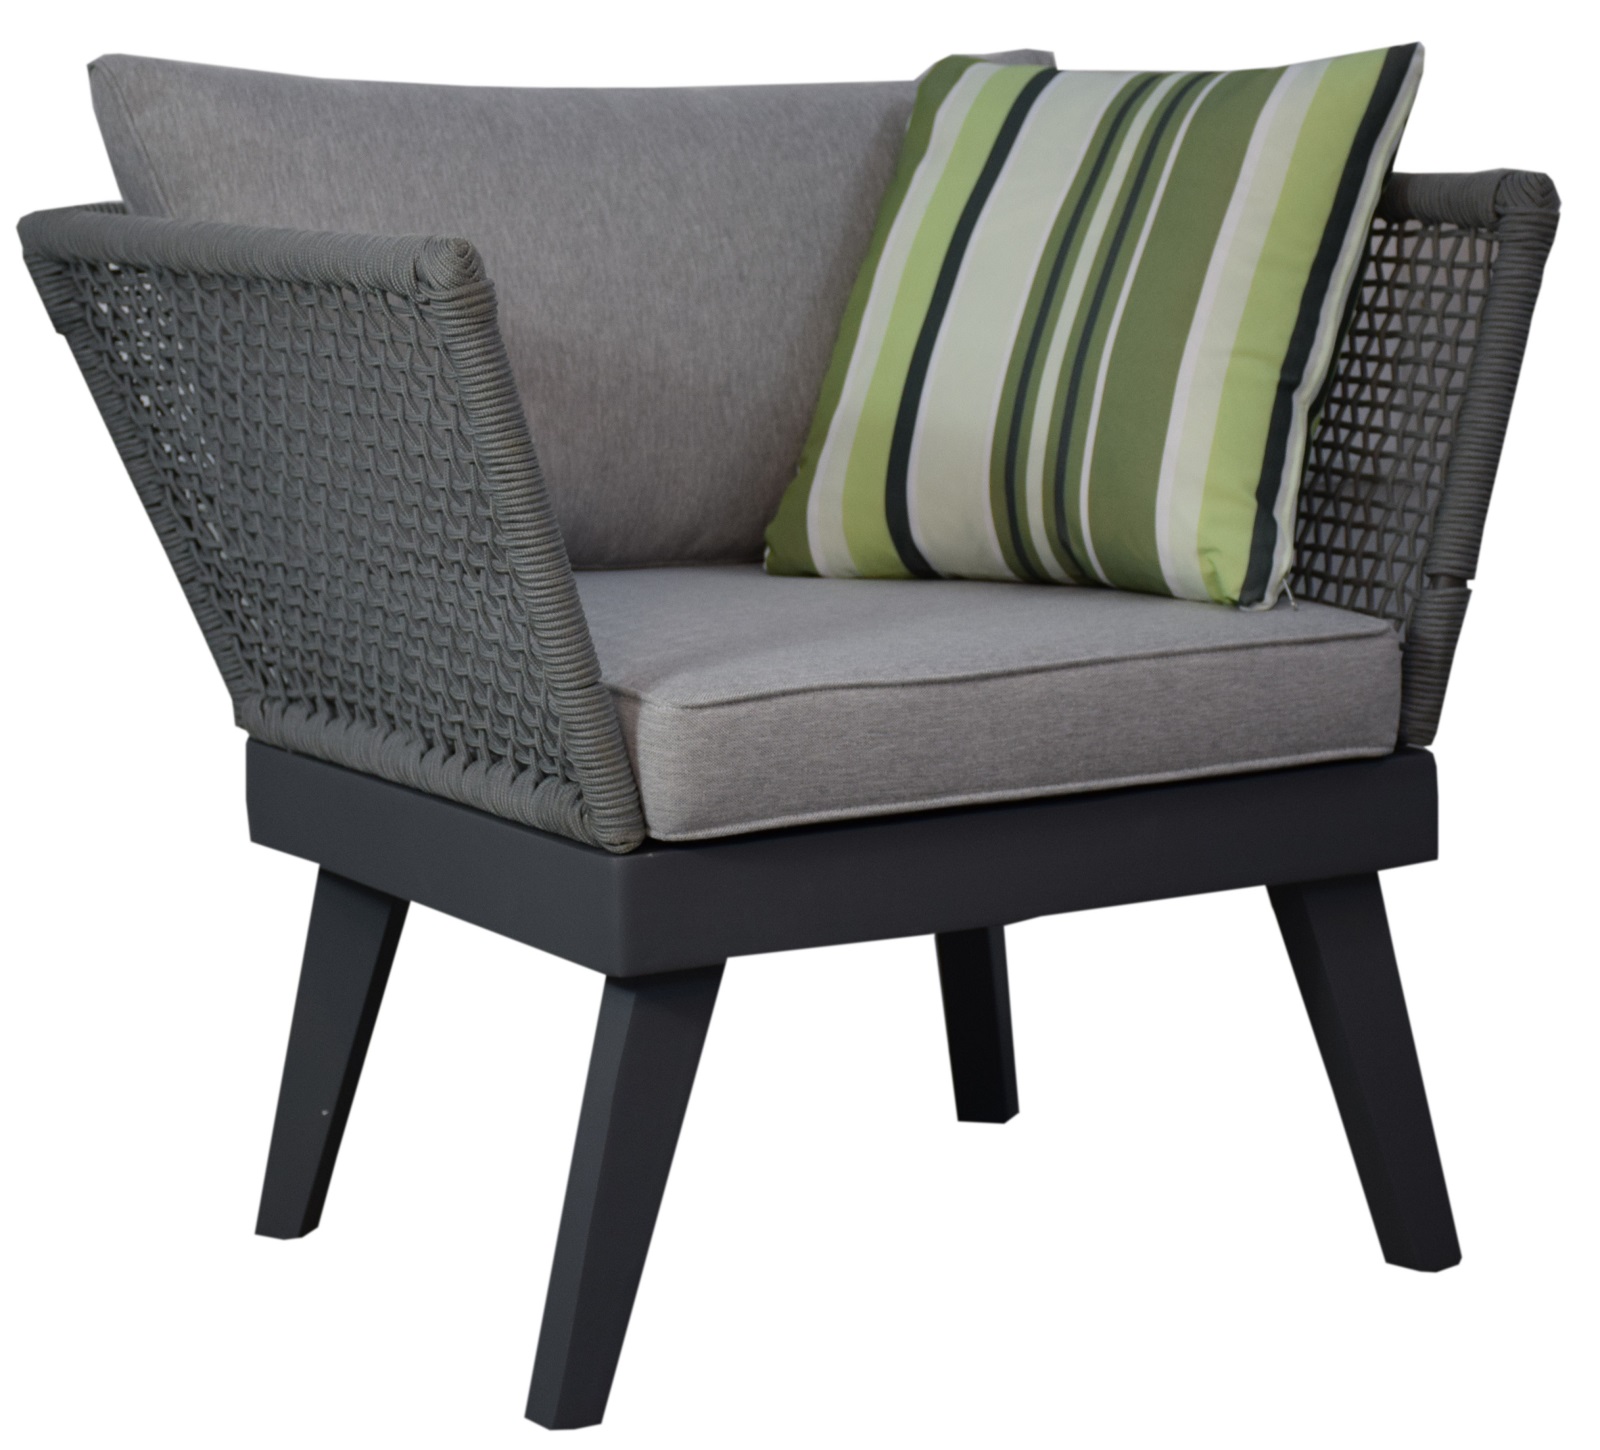 Armchair for garden set Cuba gray